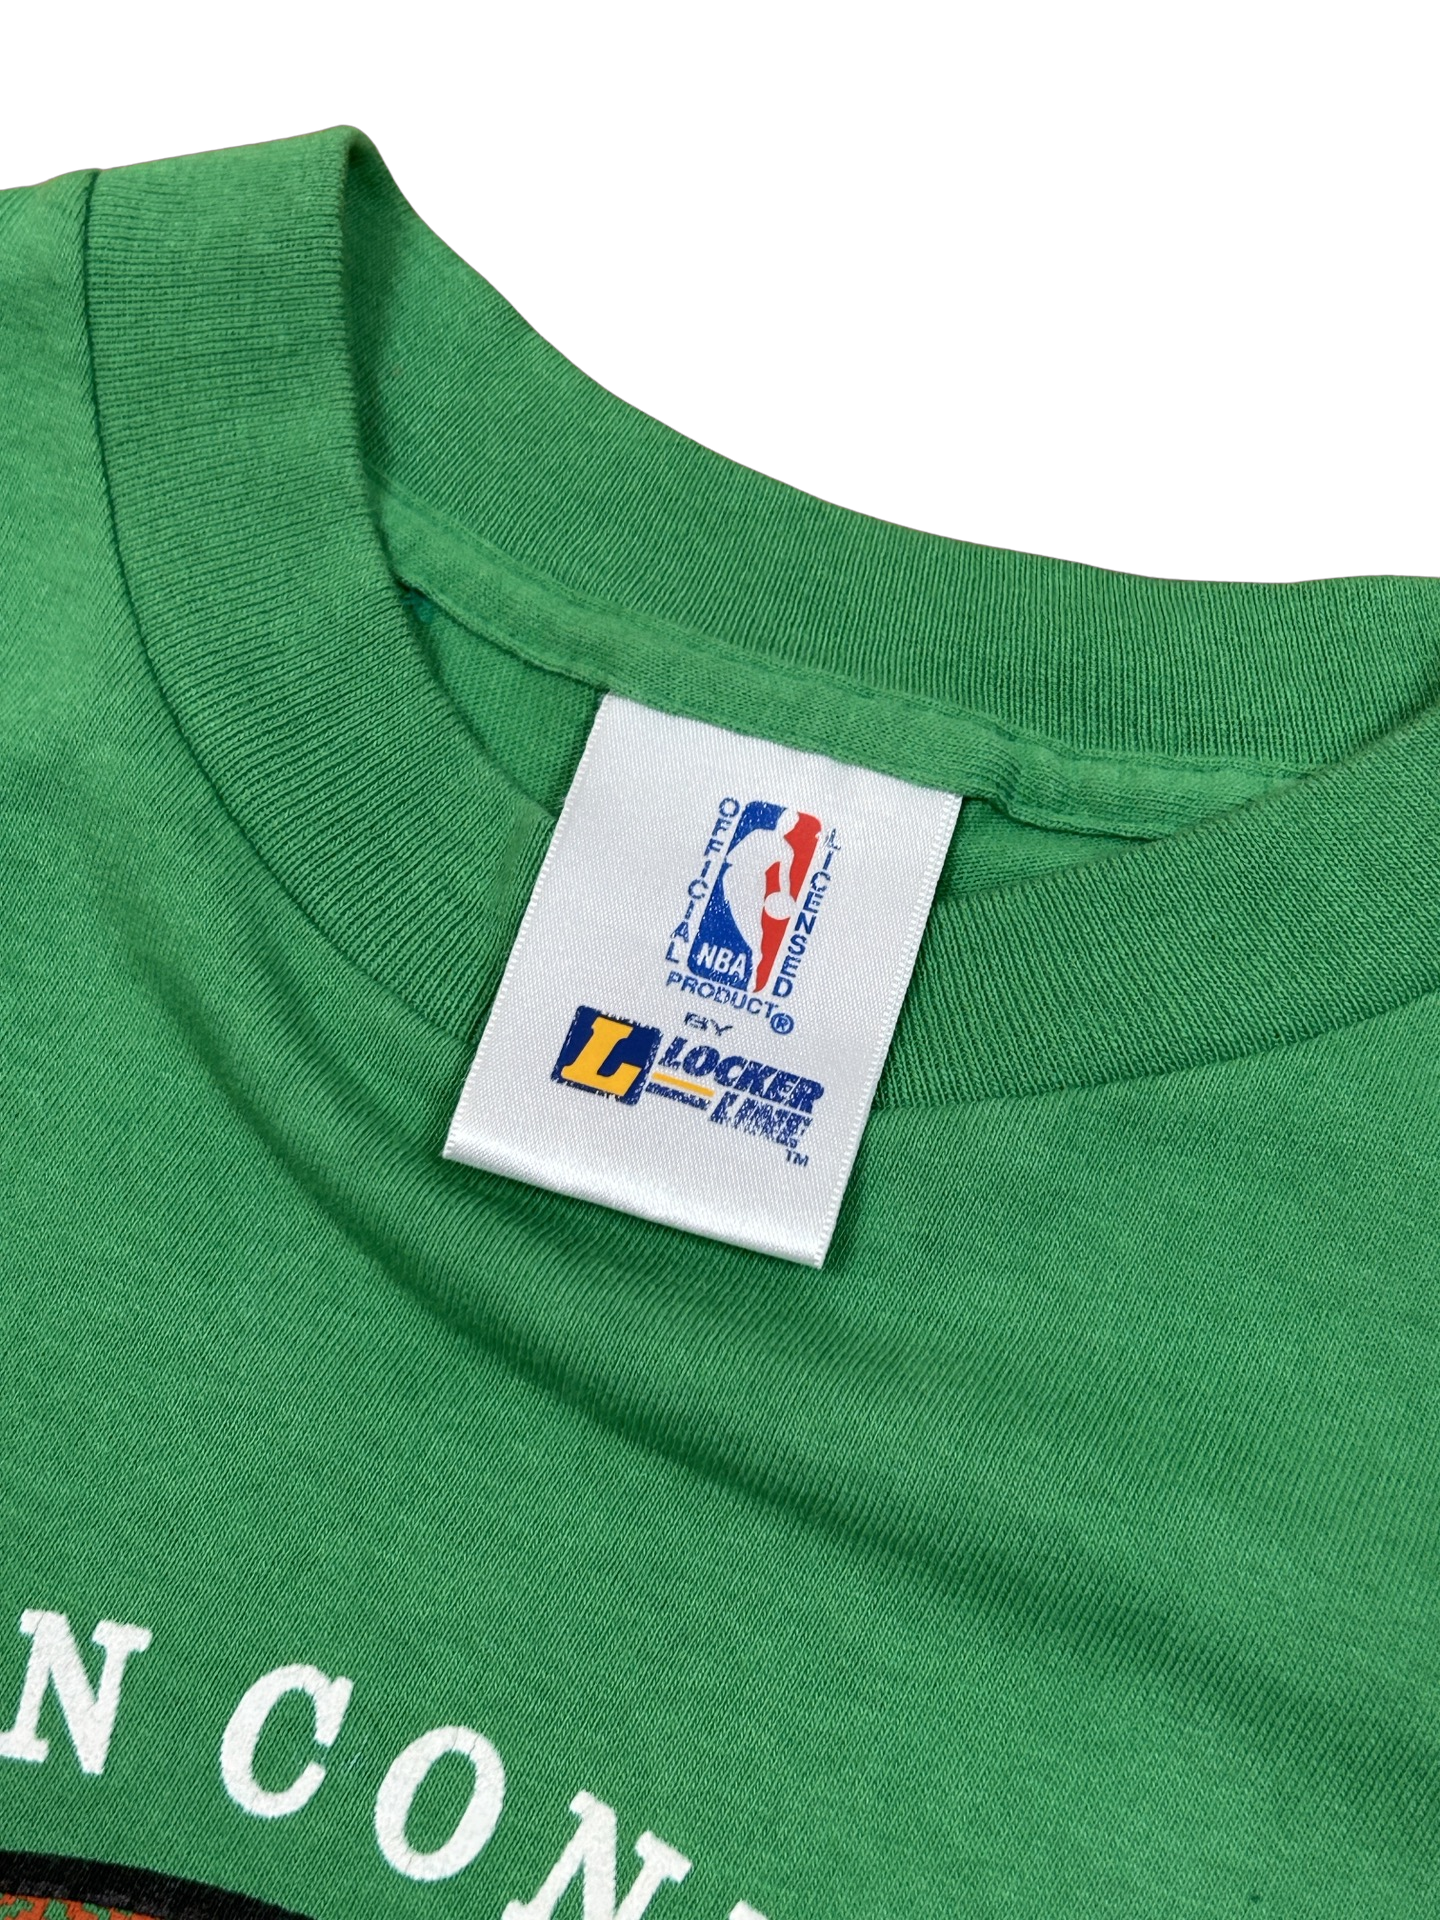 '92 Celtics tee